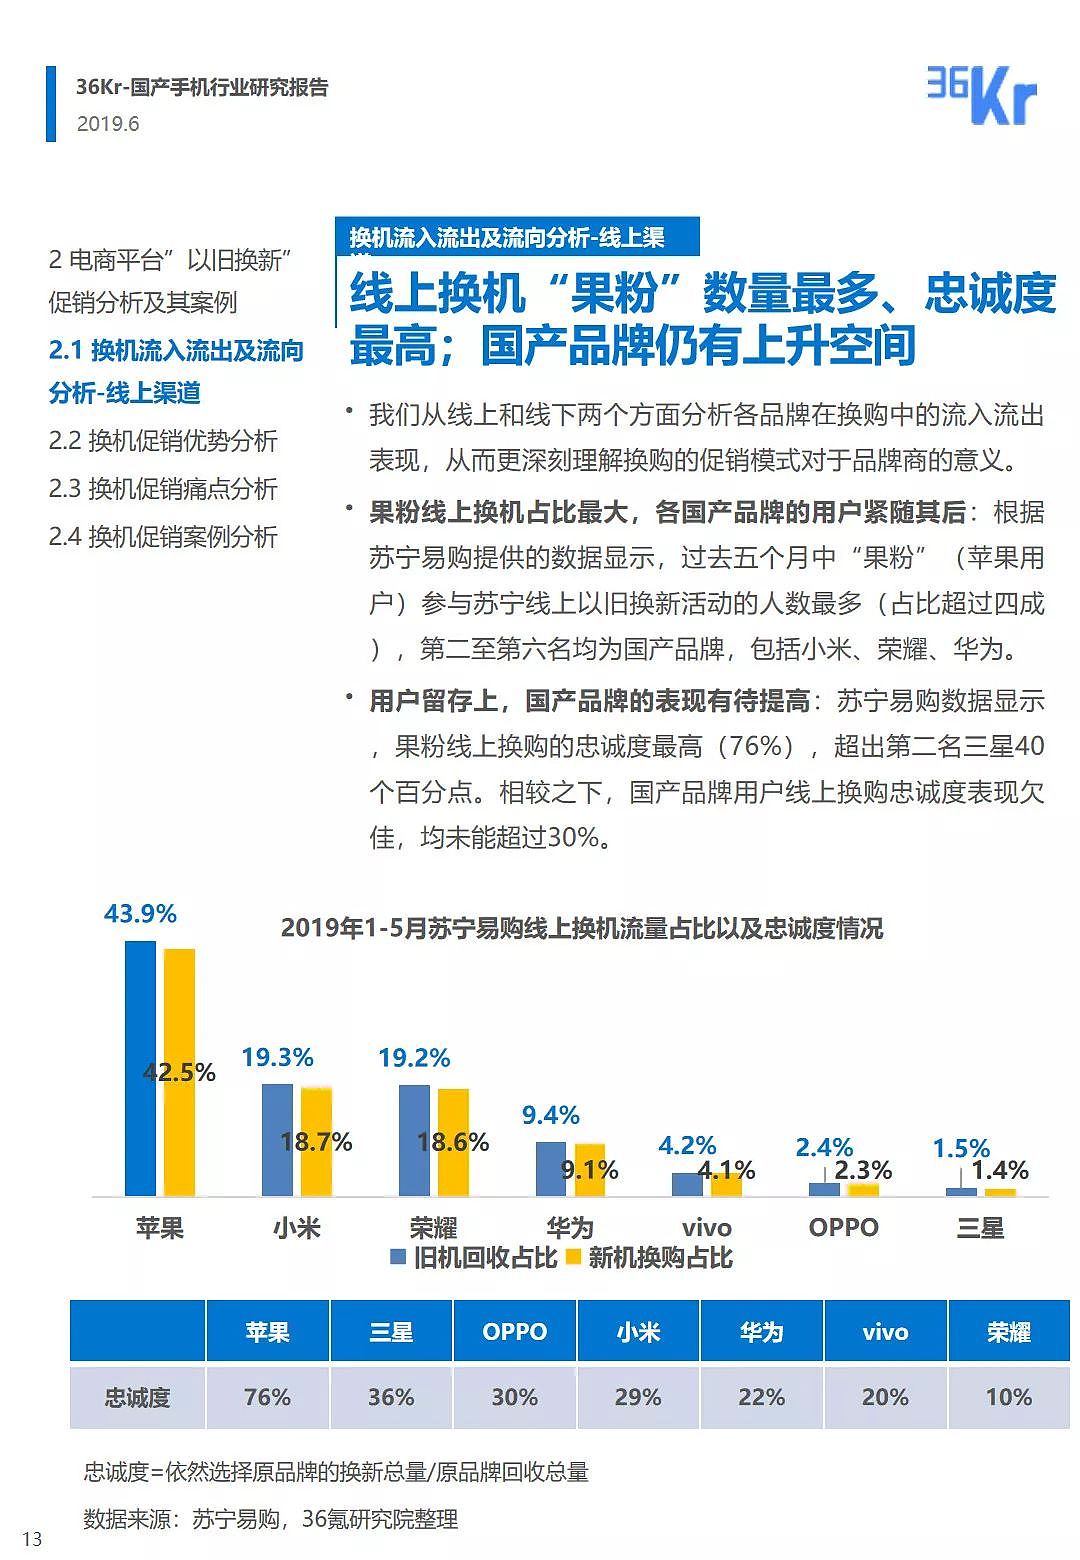 中国手机品牌市场营销研究报告 | 36氪研究 - 14